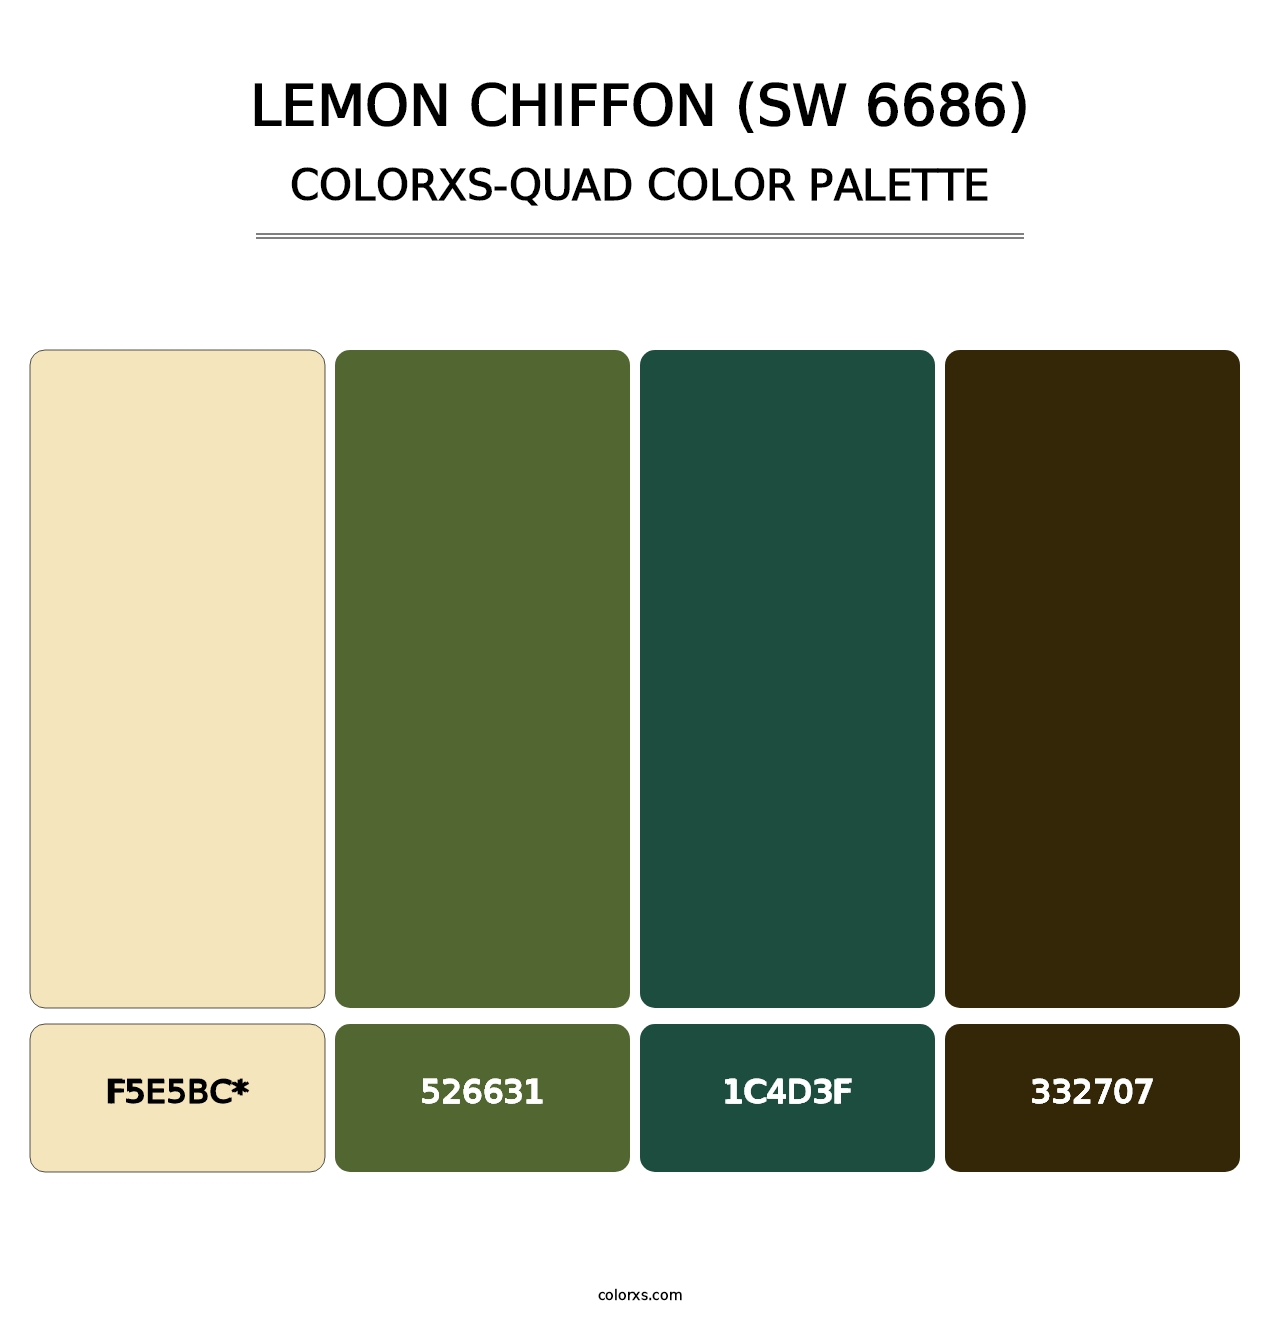 Lemon Chiffon (SW 6686) - Colorxs Quad Palette